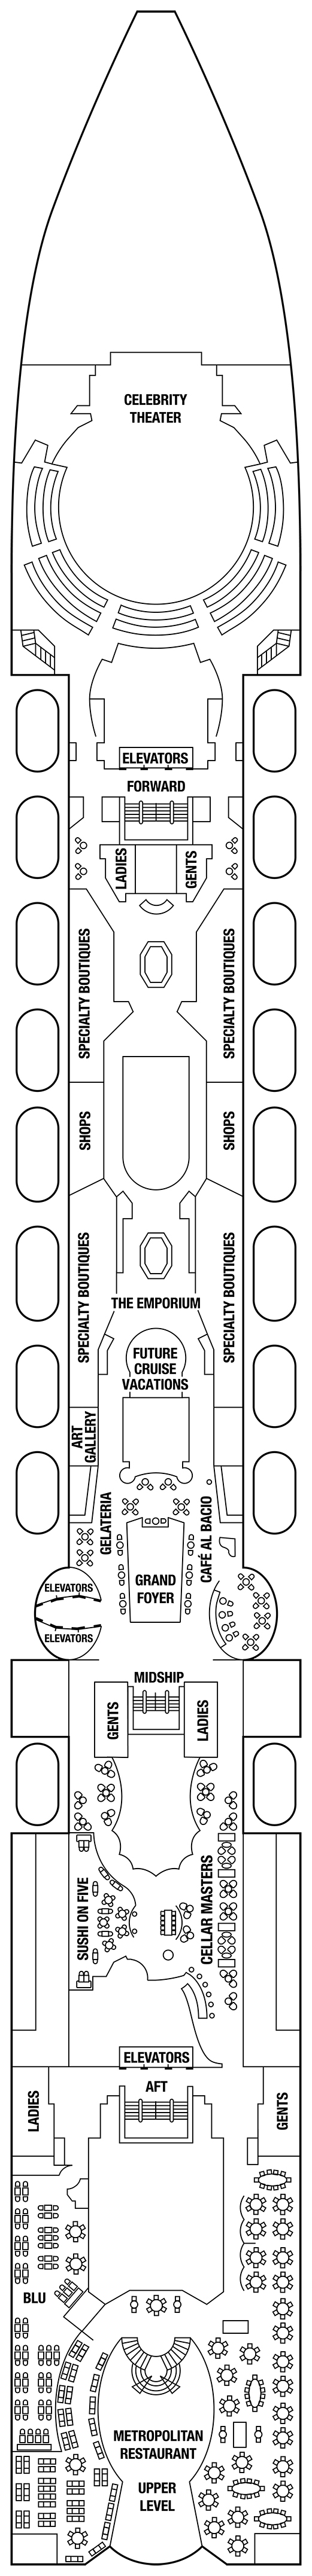 Celebrity Millennium Deck Plans CruiseInd